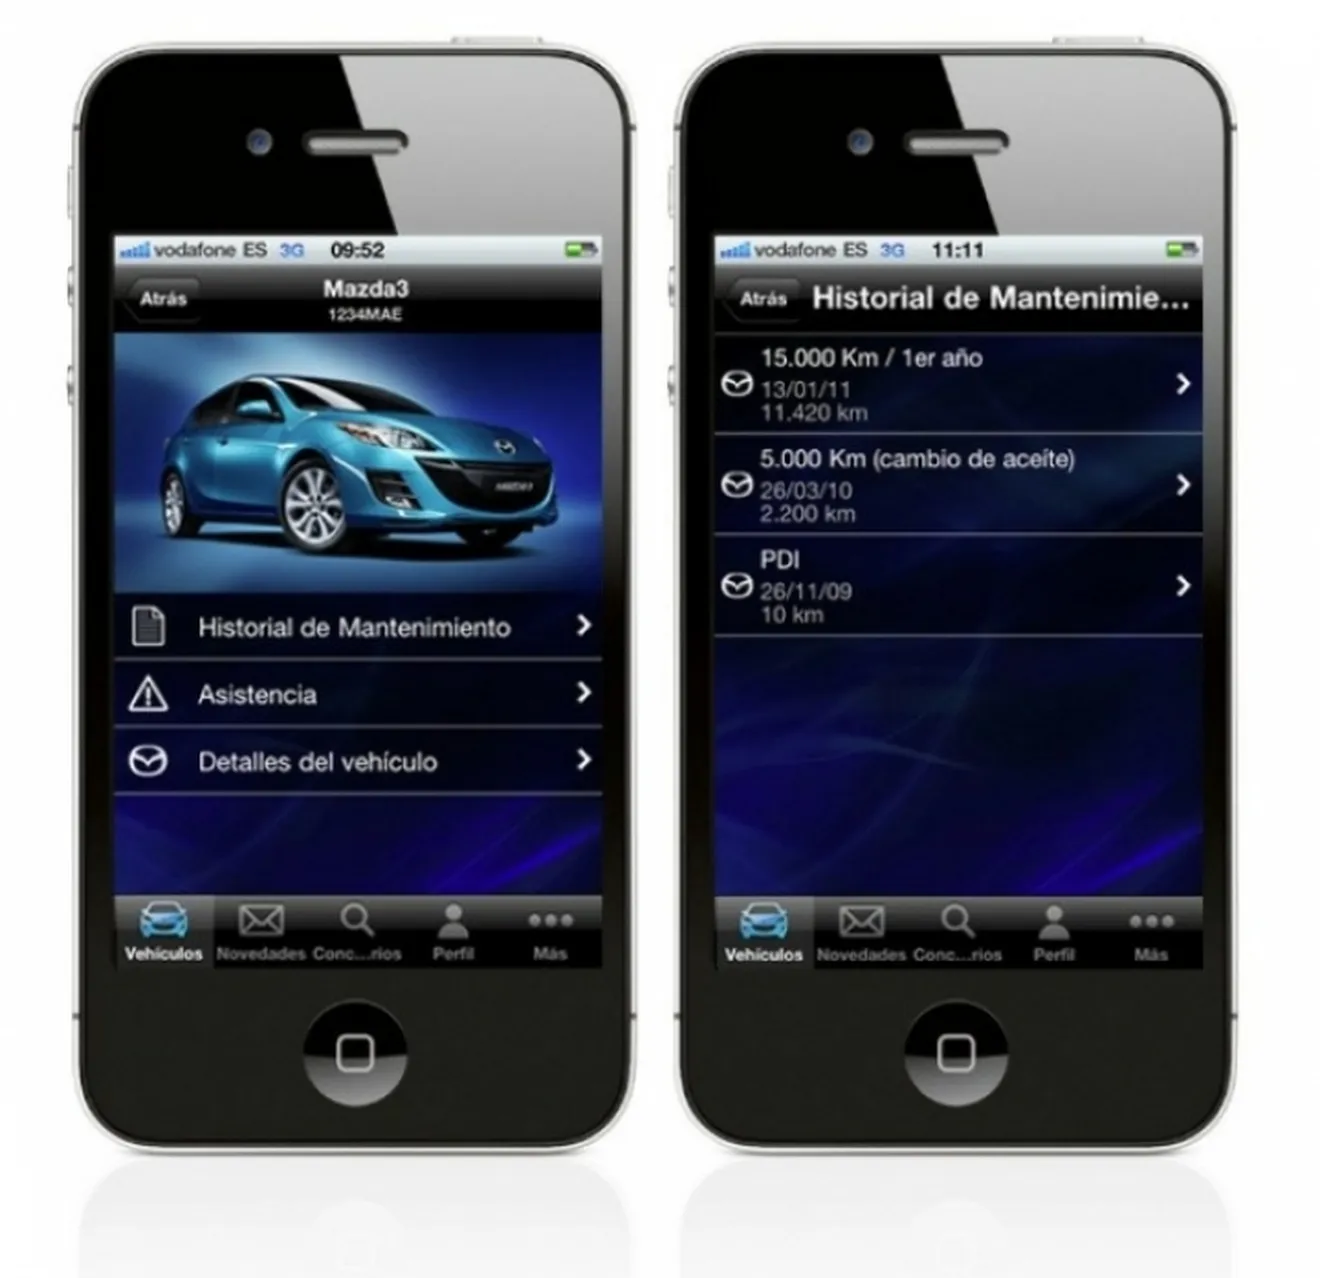 MyMazda, una App para administrar el mantenimiento de tu coche